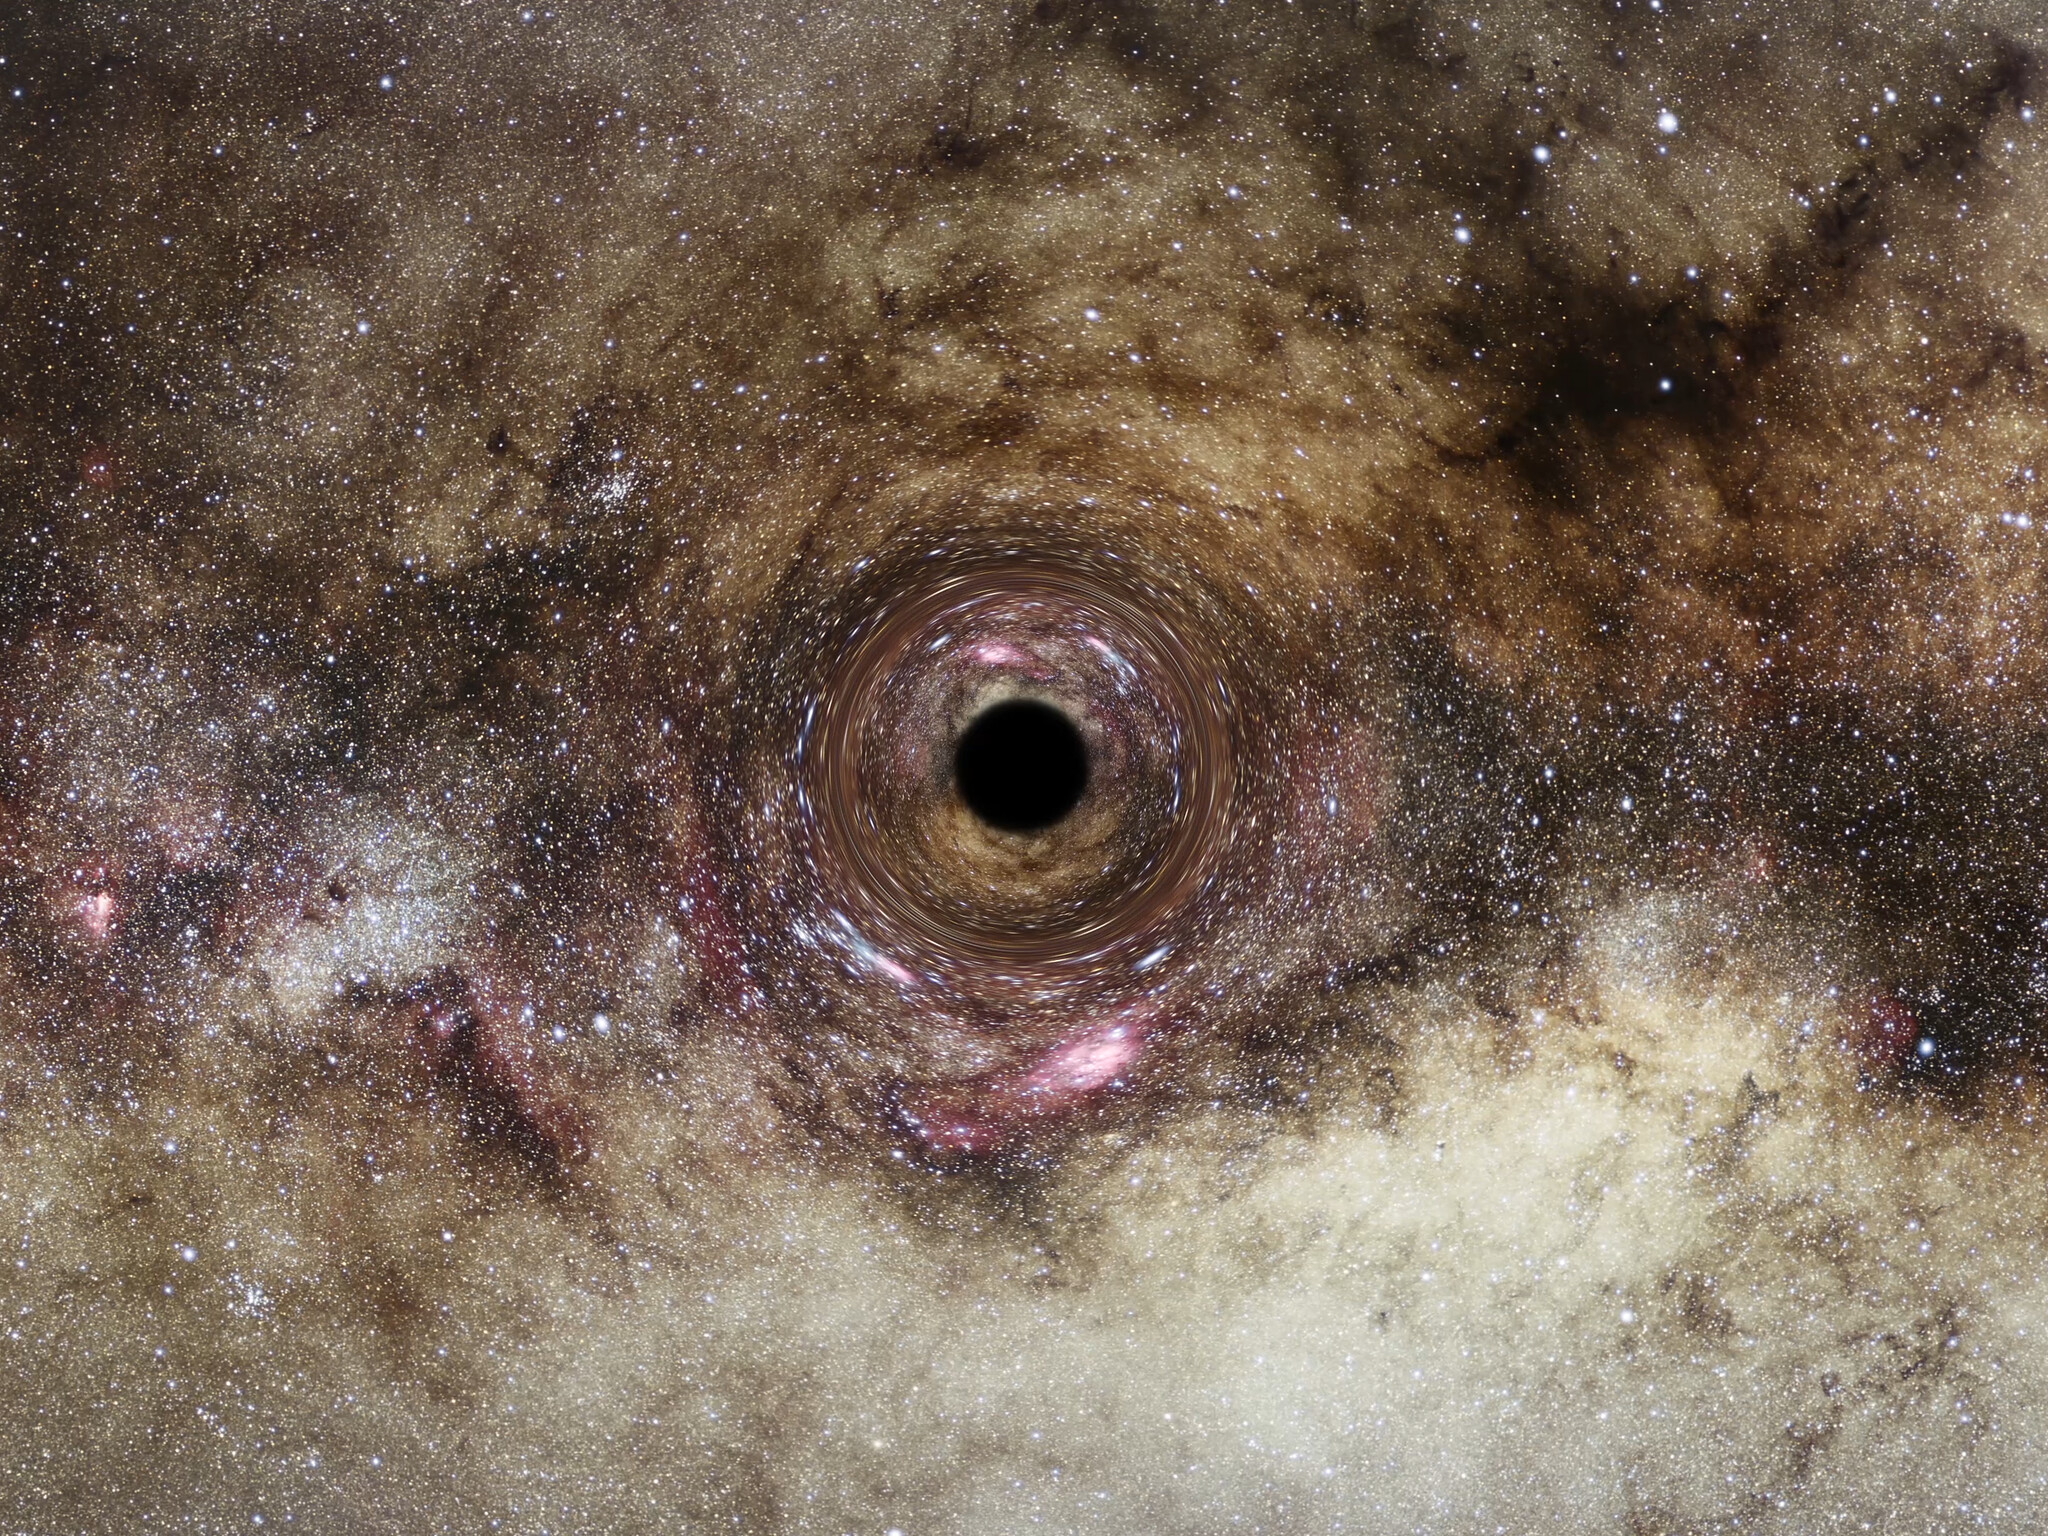 Voici une vue d'artiste d'un trou noir dérivant dans notre Galaxie, la Voie lactée. Le trou noir est le reste écrasé d'une étoile massive qui a explosé en supernova. Le noyau survivant est de plusieurs fois la masse de notre Soleil. Le trou noir piège la lumière en raison de son champ gravitationnel intense. Le trou noir déforme l'espace qui l'entoure, ce qui déforme les images d'étoiles d'arrière-plan alignées presque directement derrière lui. Cet effet de « lentille » gravitationnelle offre la seule preuve révélatrice de l'existence de trous noirs solitaires errant dans notre Galaxie, dont la population pourrait atteindre 100 millions. Le télescope spatial Hubble part à la recherche de ces trous noirs en recherchant la distorsion de la lumière des étoiles lorsque les trous noirs dérivent devant les étoiles de fond. © ESA, Hubble, Digitized Sky Survey, Nick Risinger (skysurvey.org), N. Bartmann